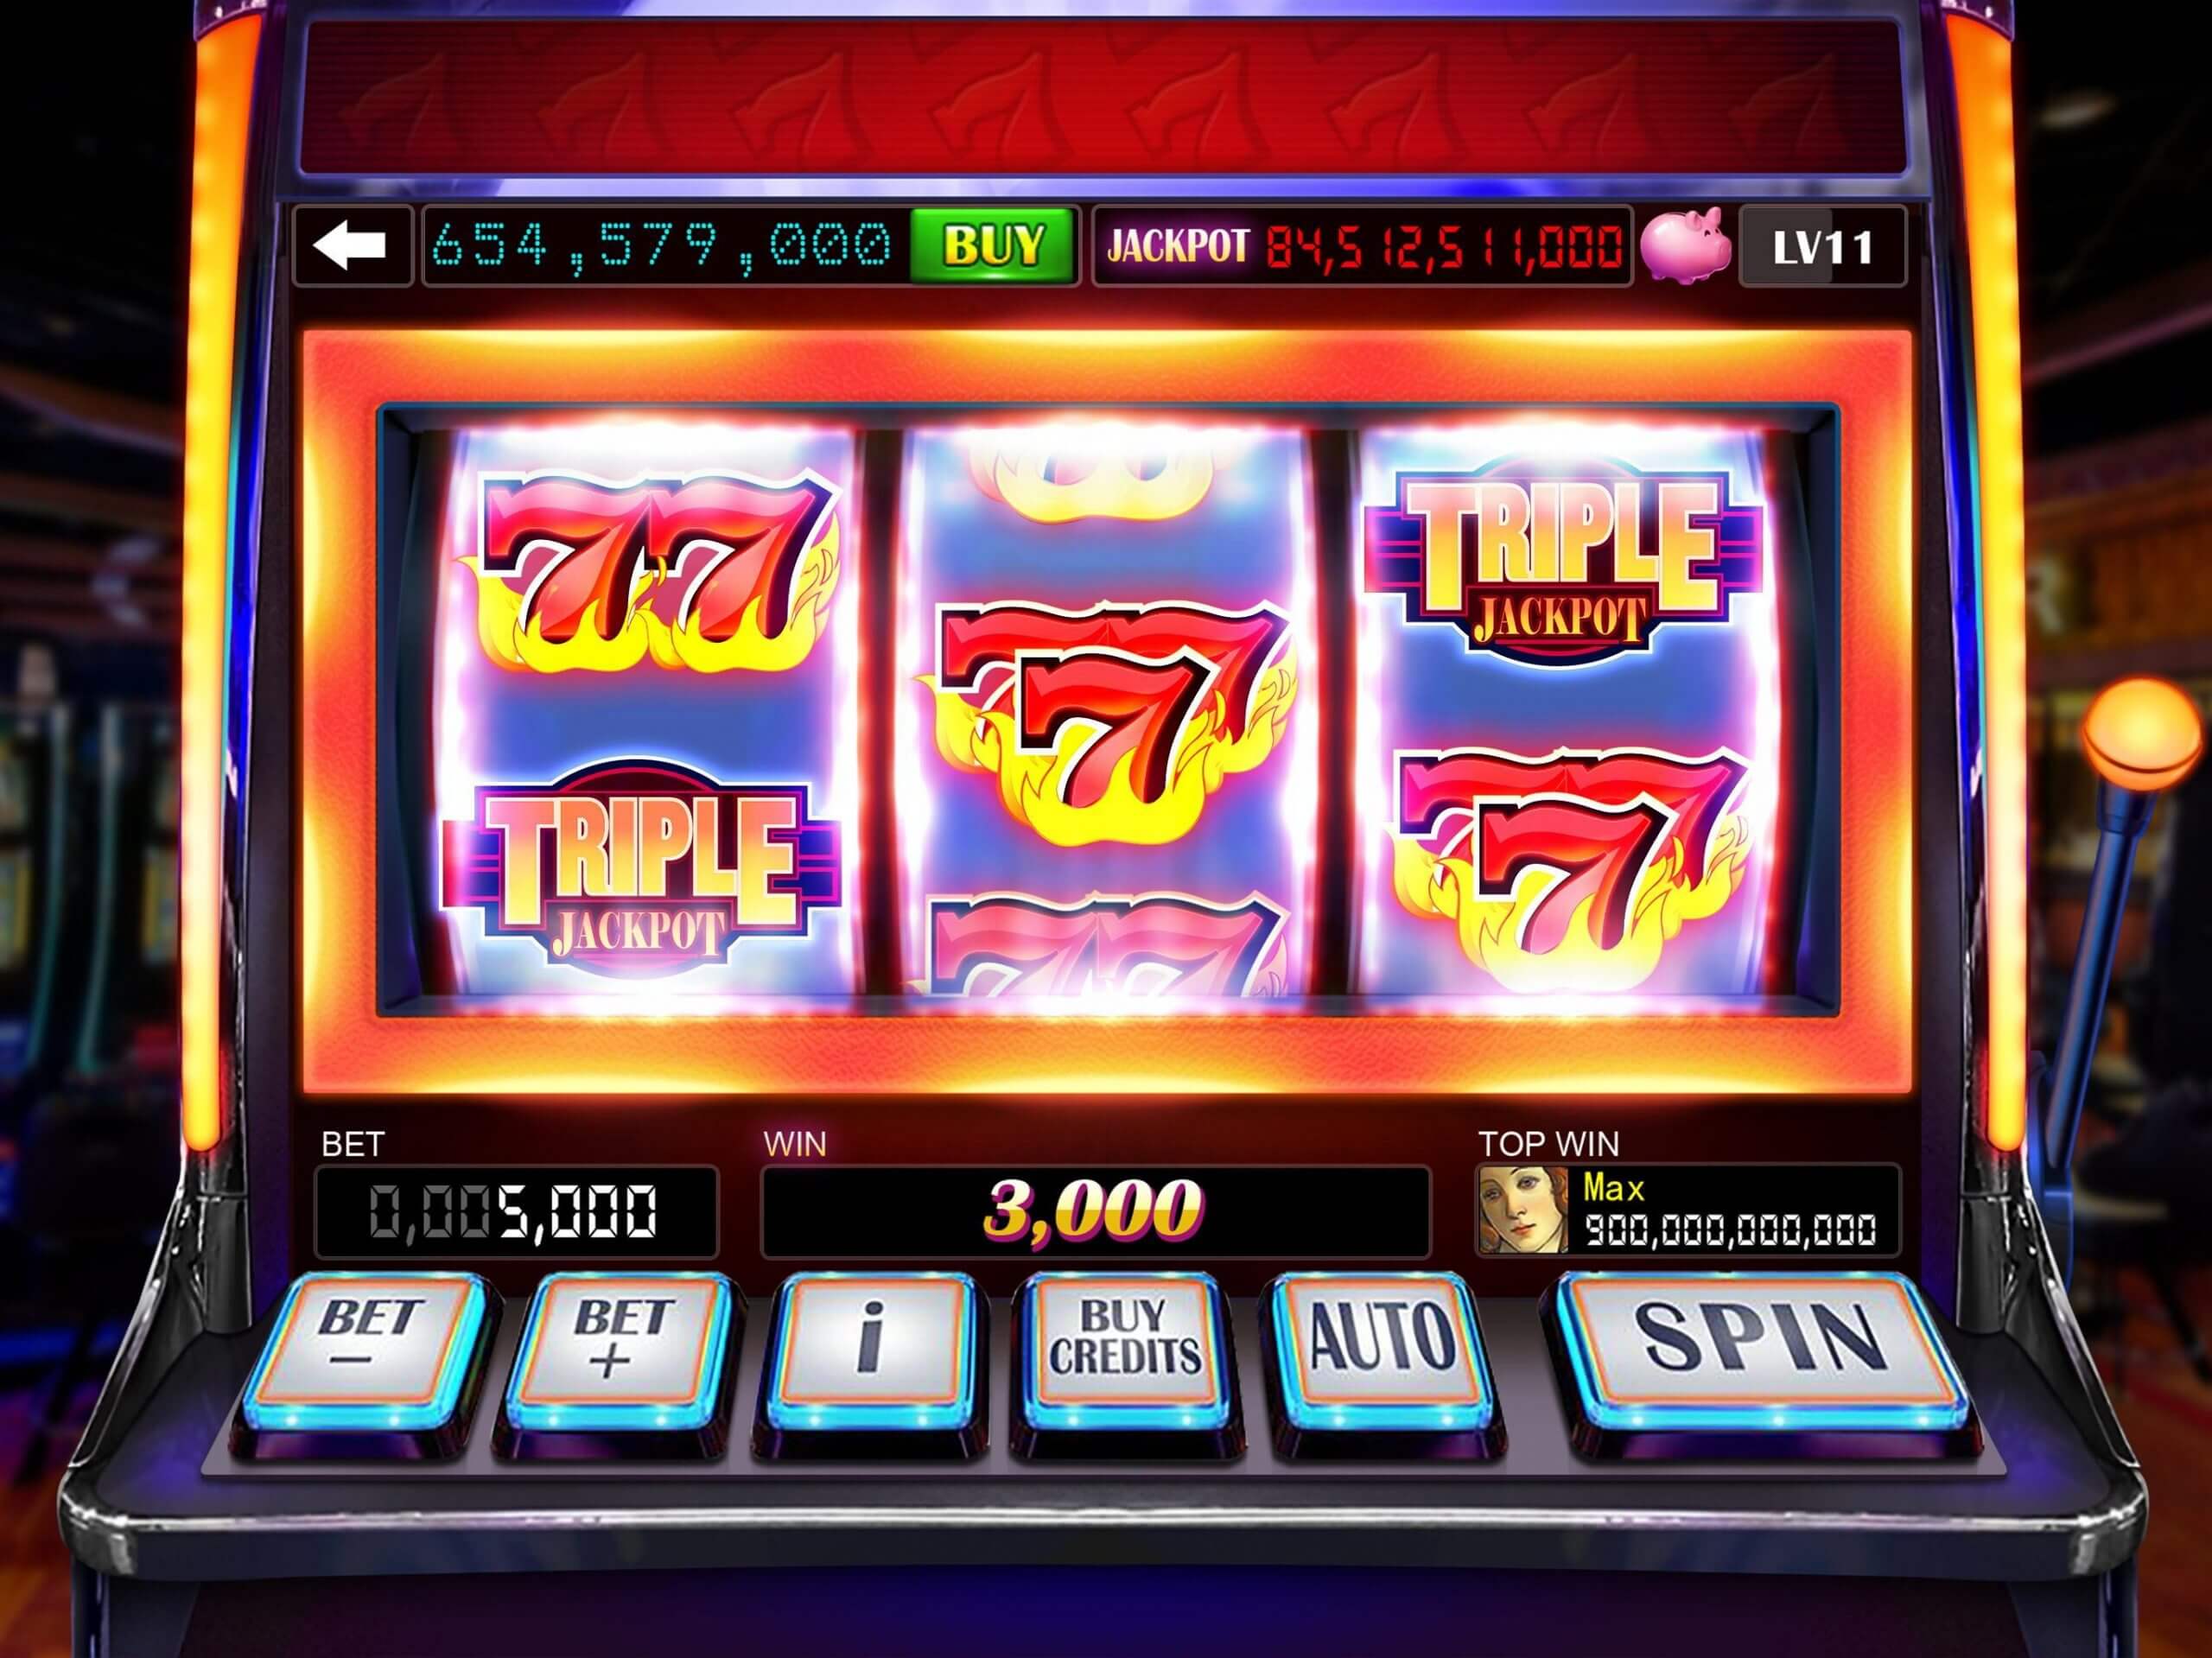 Slot game là gì? Hướng dẫn cách chơi slot game 12bet đổi thưởng